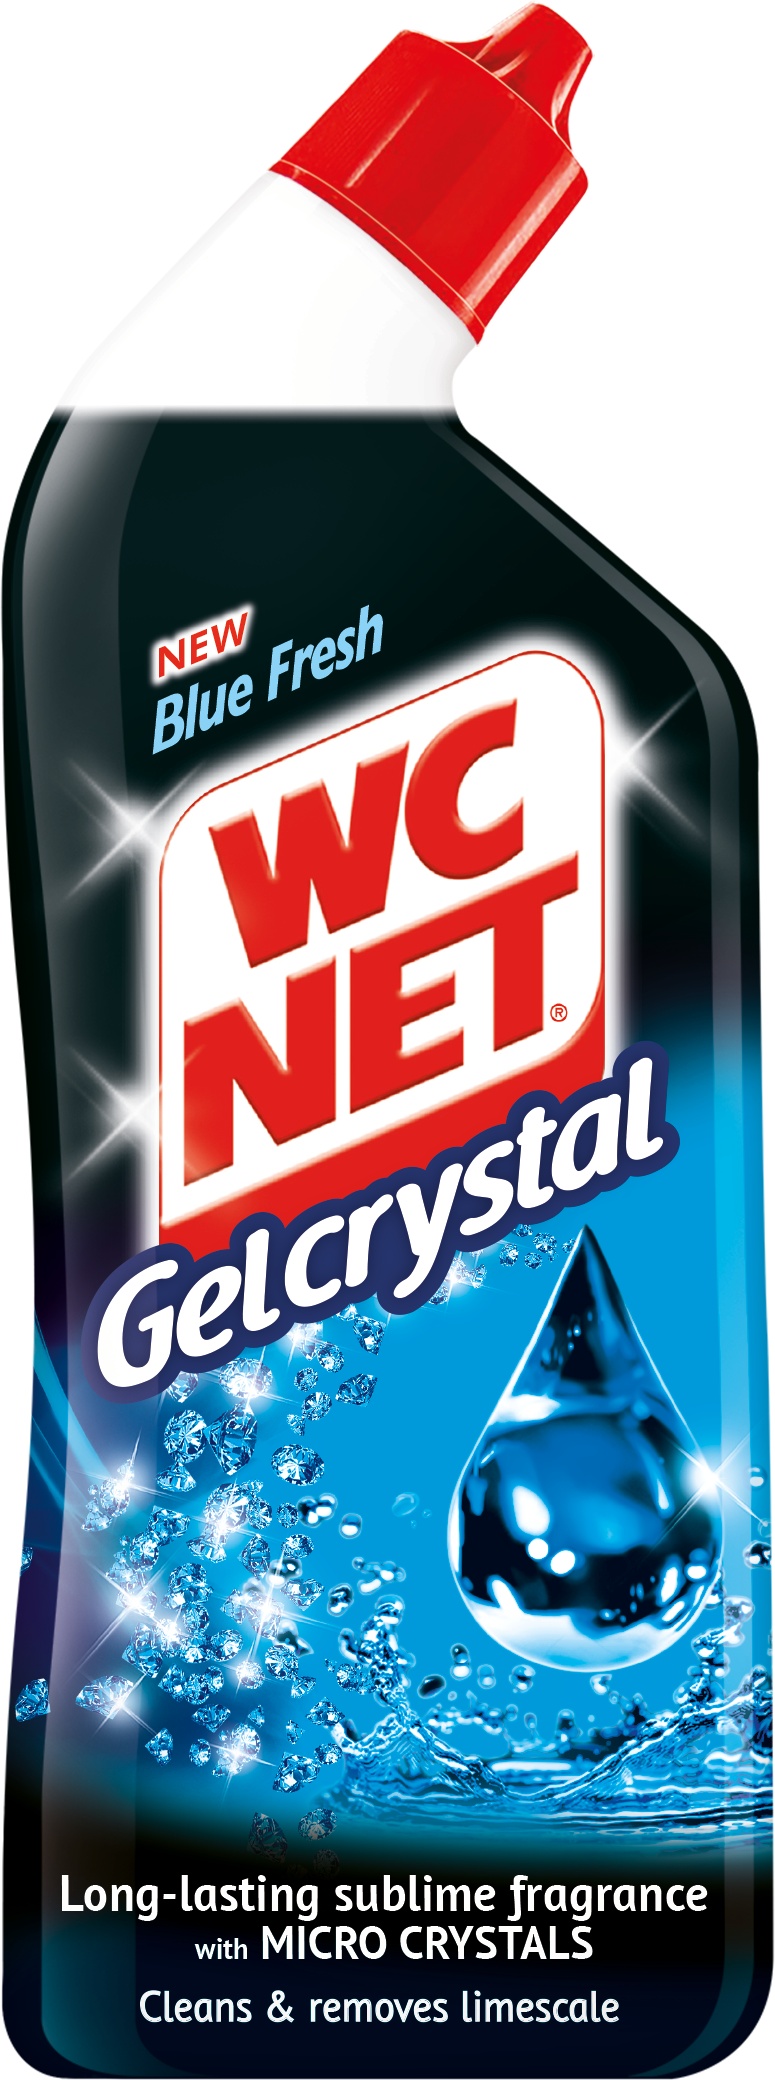 Slika za Wc net Cristal gel blue fresh 750ml